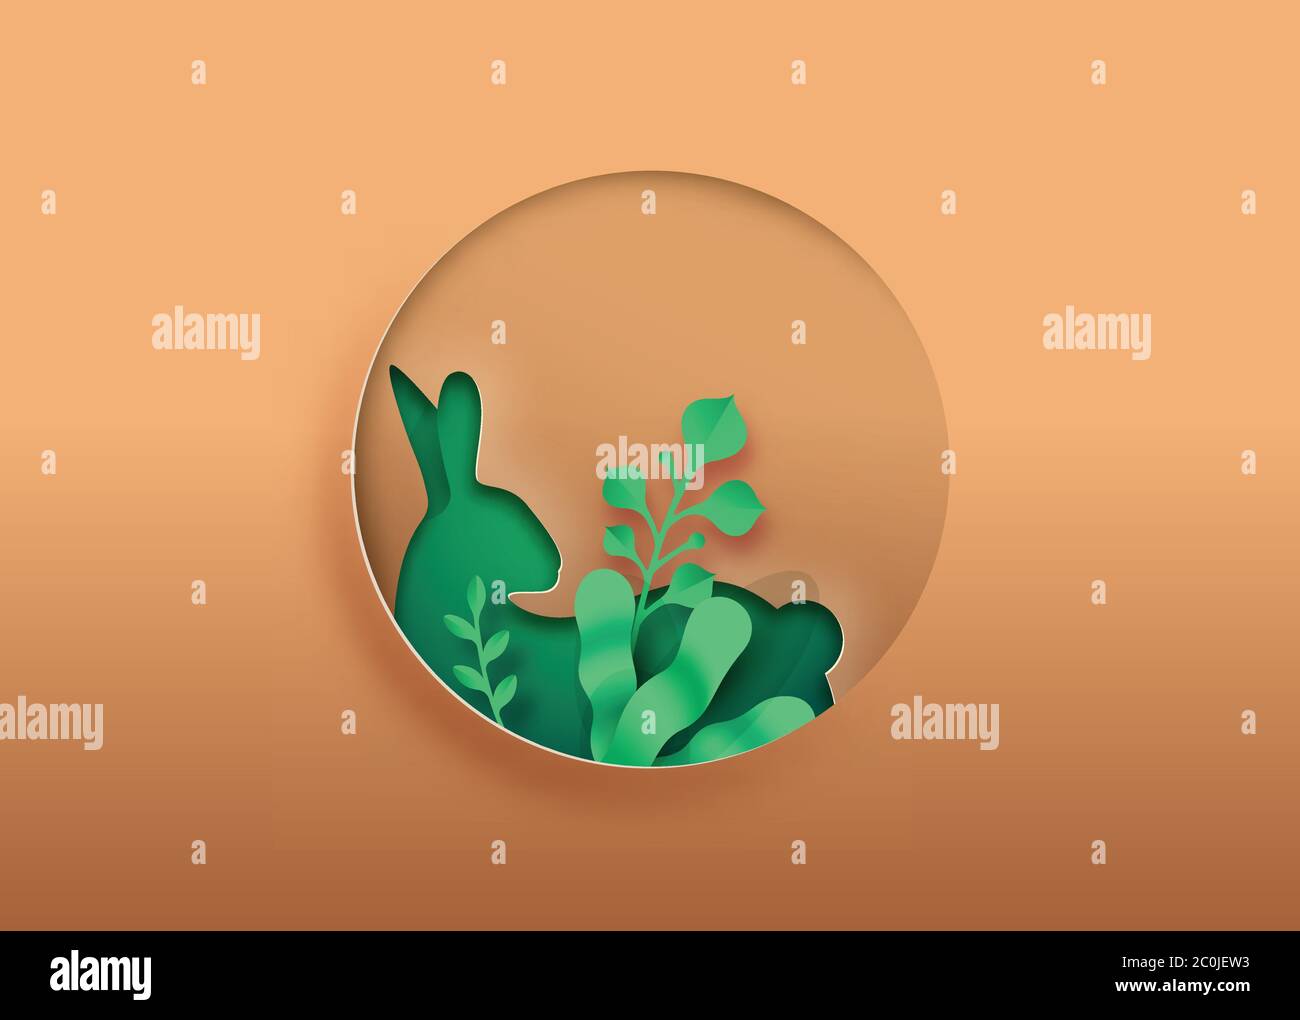 Kaninchen Papier Schnitt Illustration mit grünen Pflanzenblatt, kreisförmige Ausschnitt für Haustier Tierpflege, Bildung oder umweltfreundliche Tierwelt Konzept. Realistische BU Stock Vektor